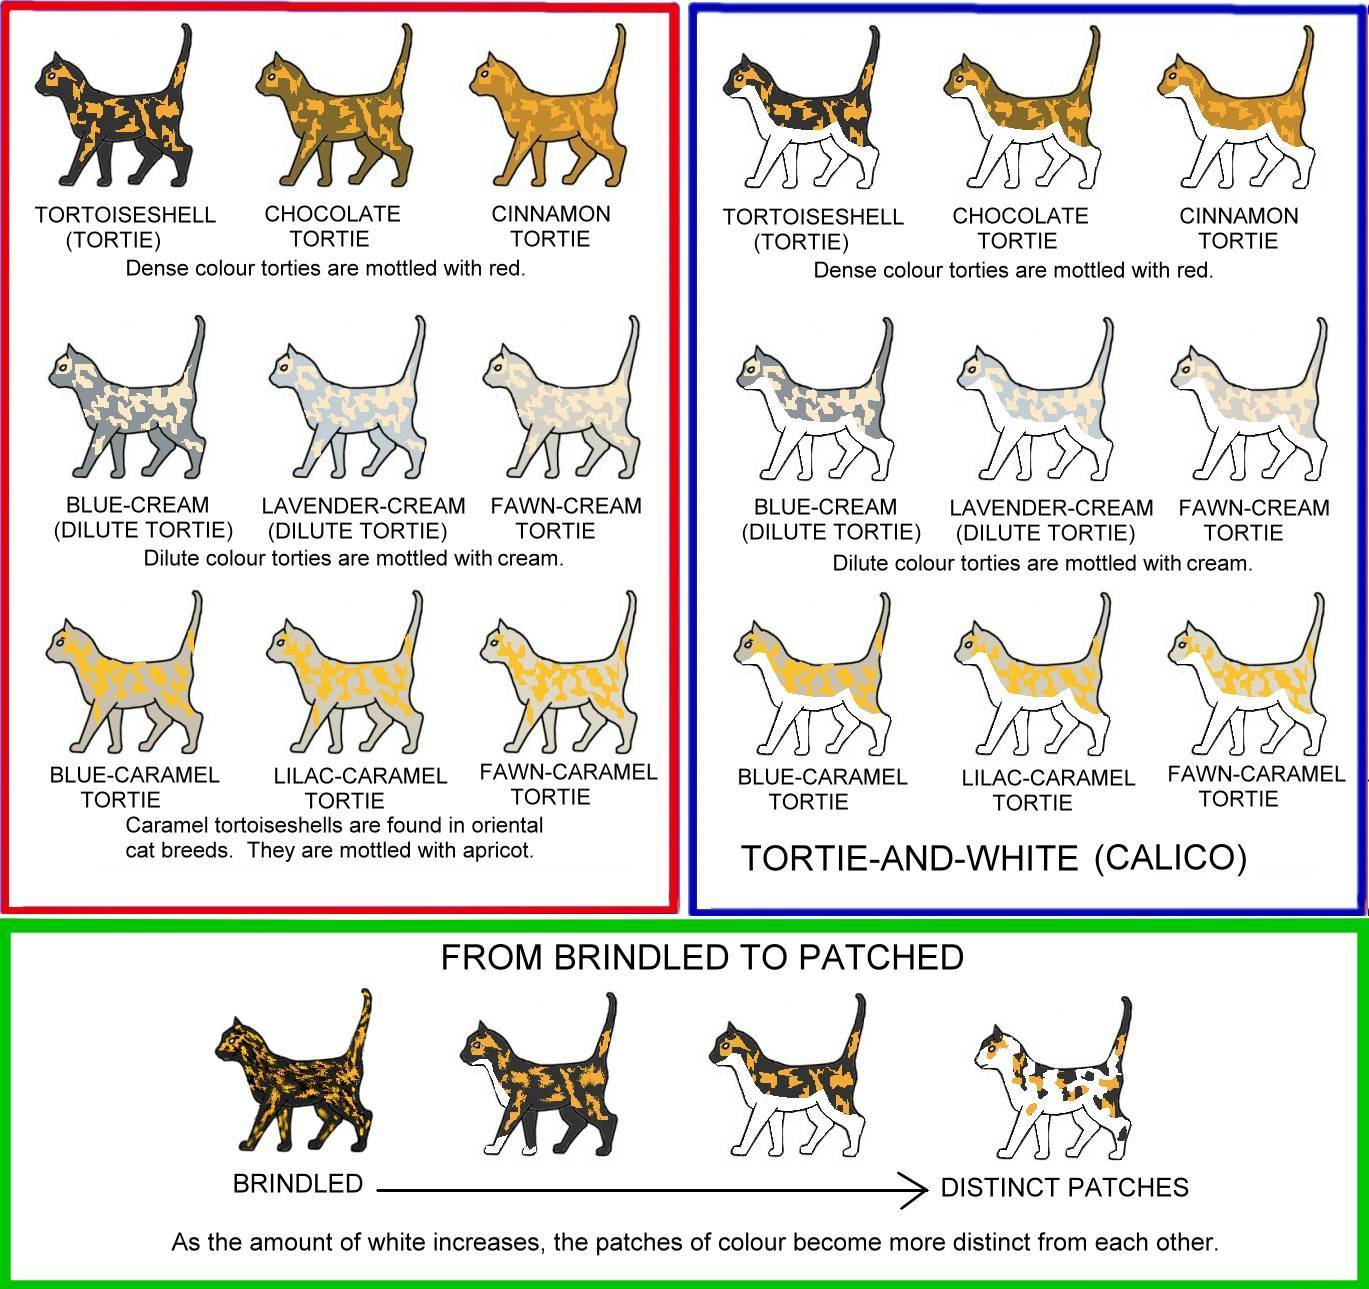 Обзор породы кошек британская короткошерстная: описание, британские котята